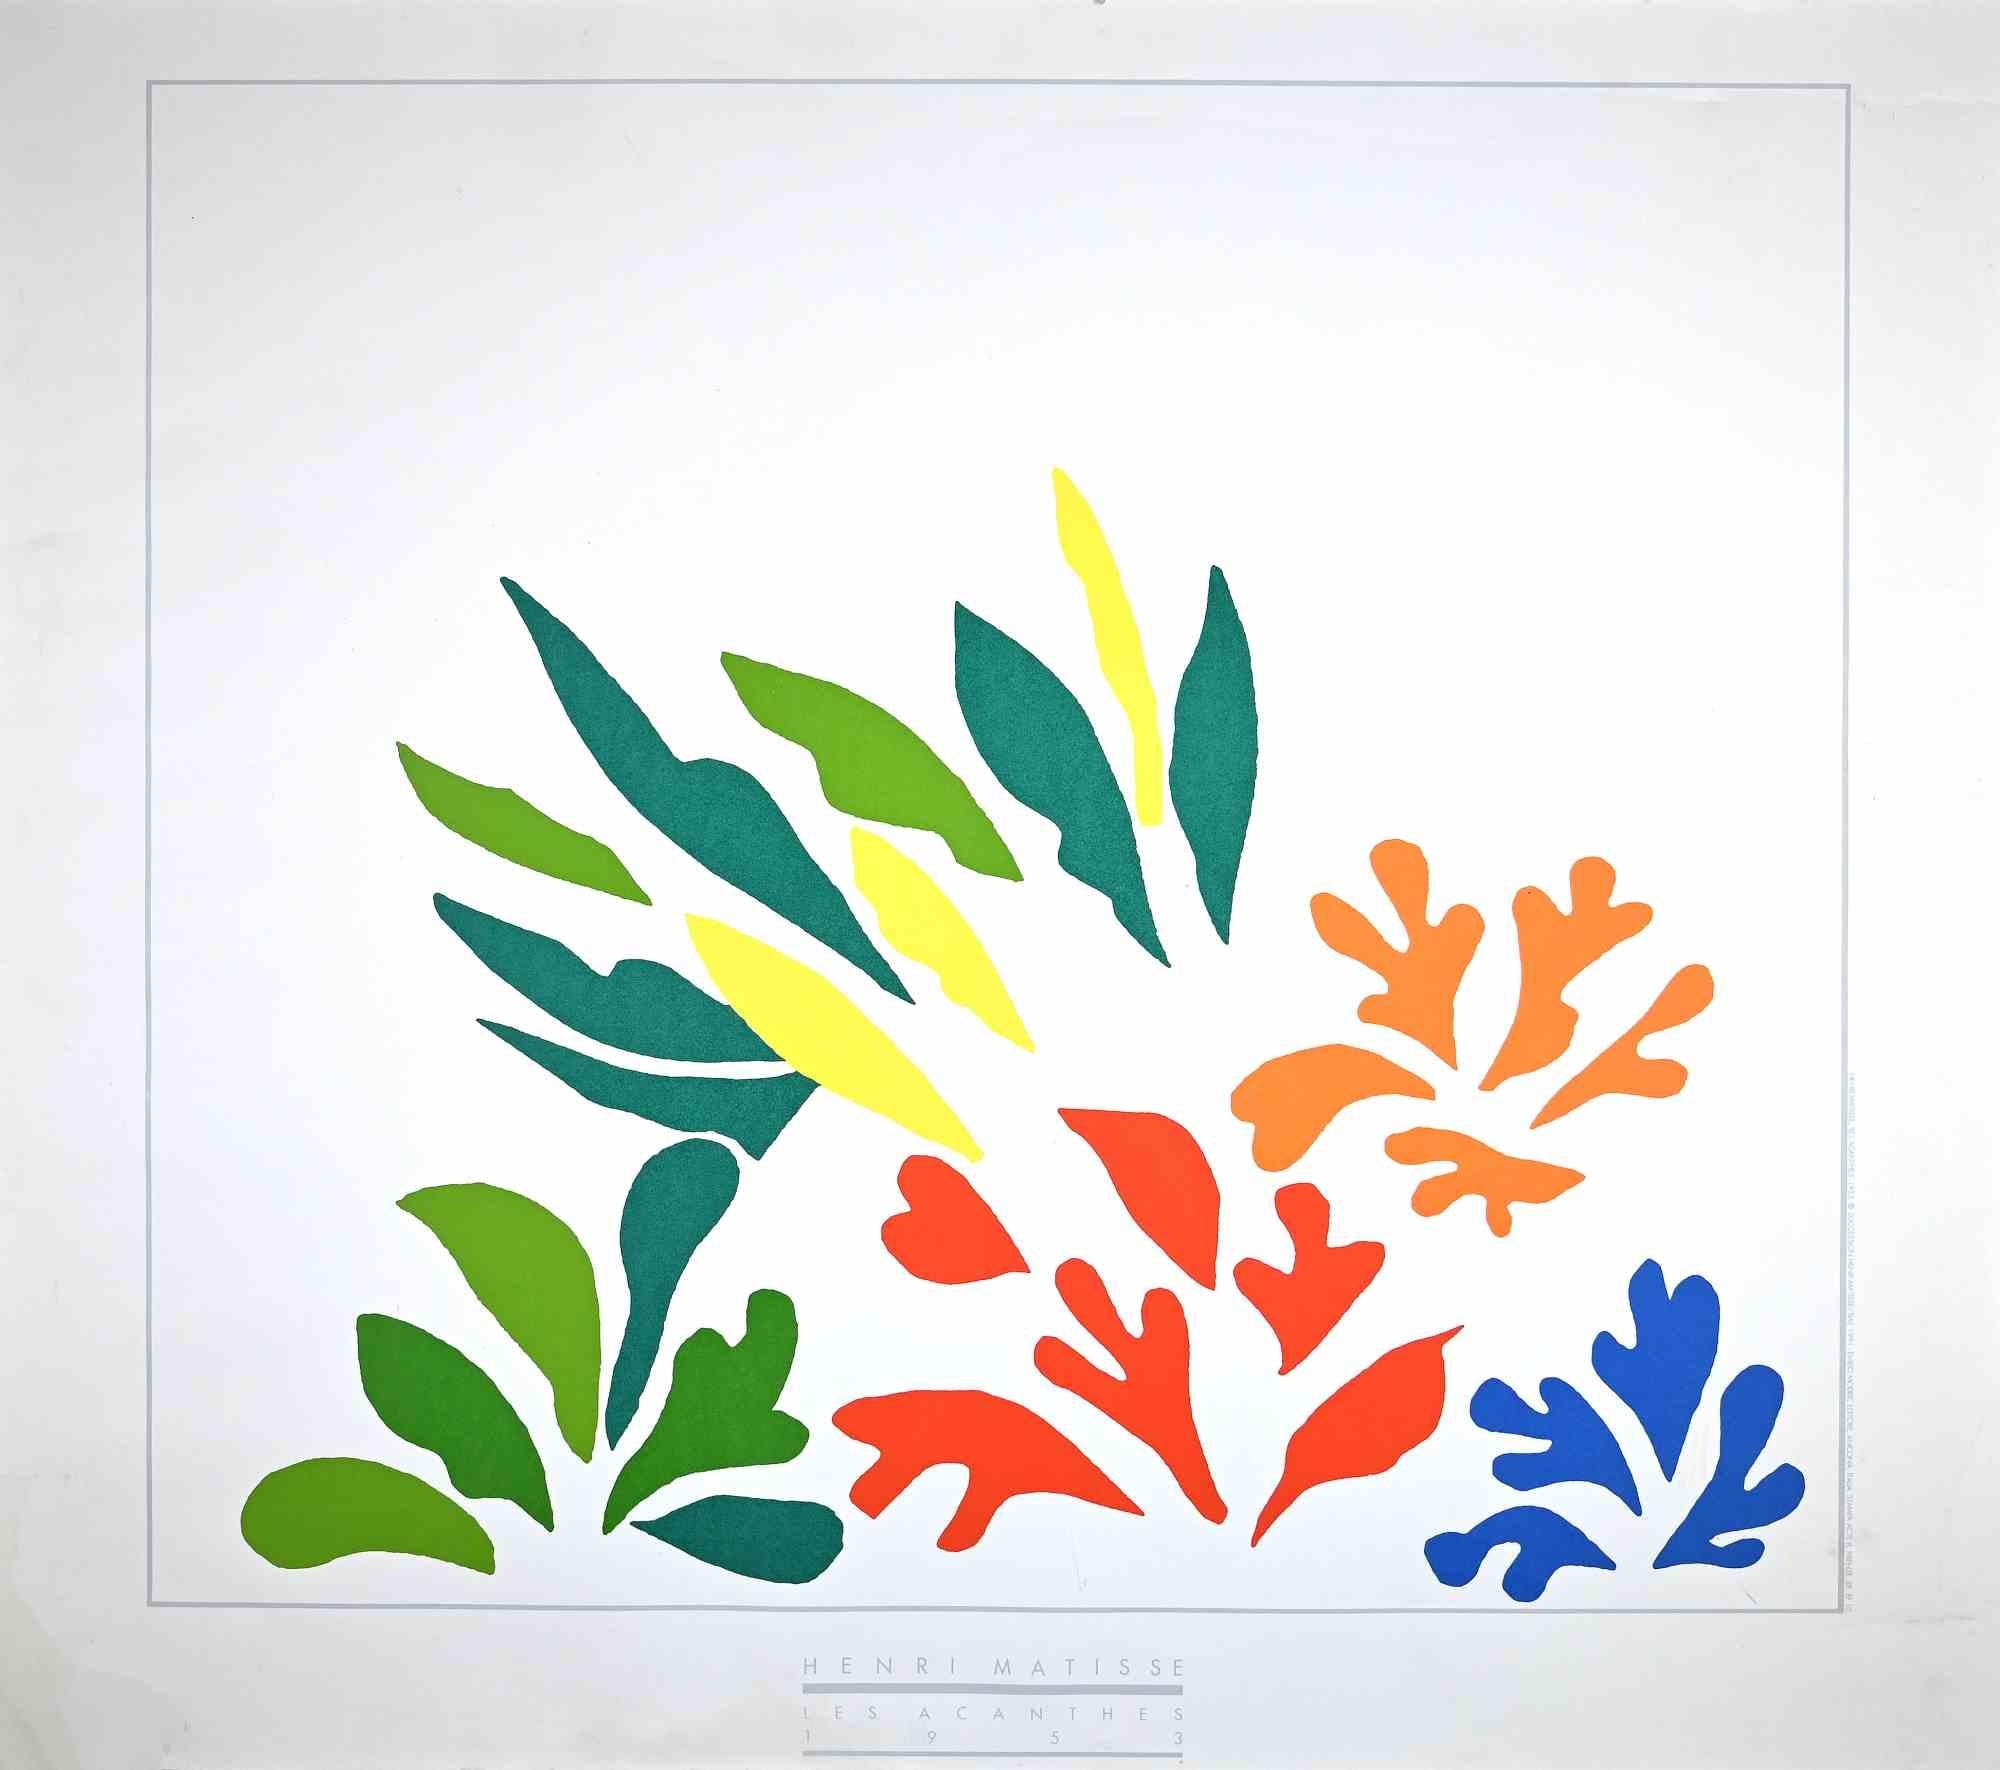 Henri Matisse - Handsigned Portfolio of Lithographs by Henri Matisse ...